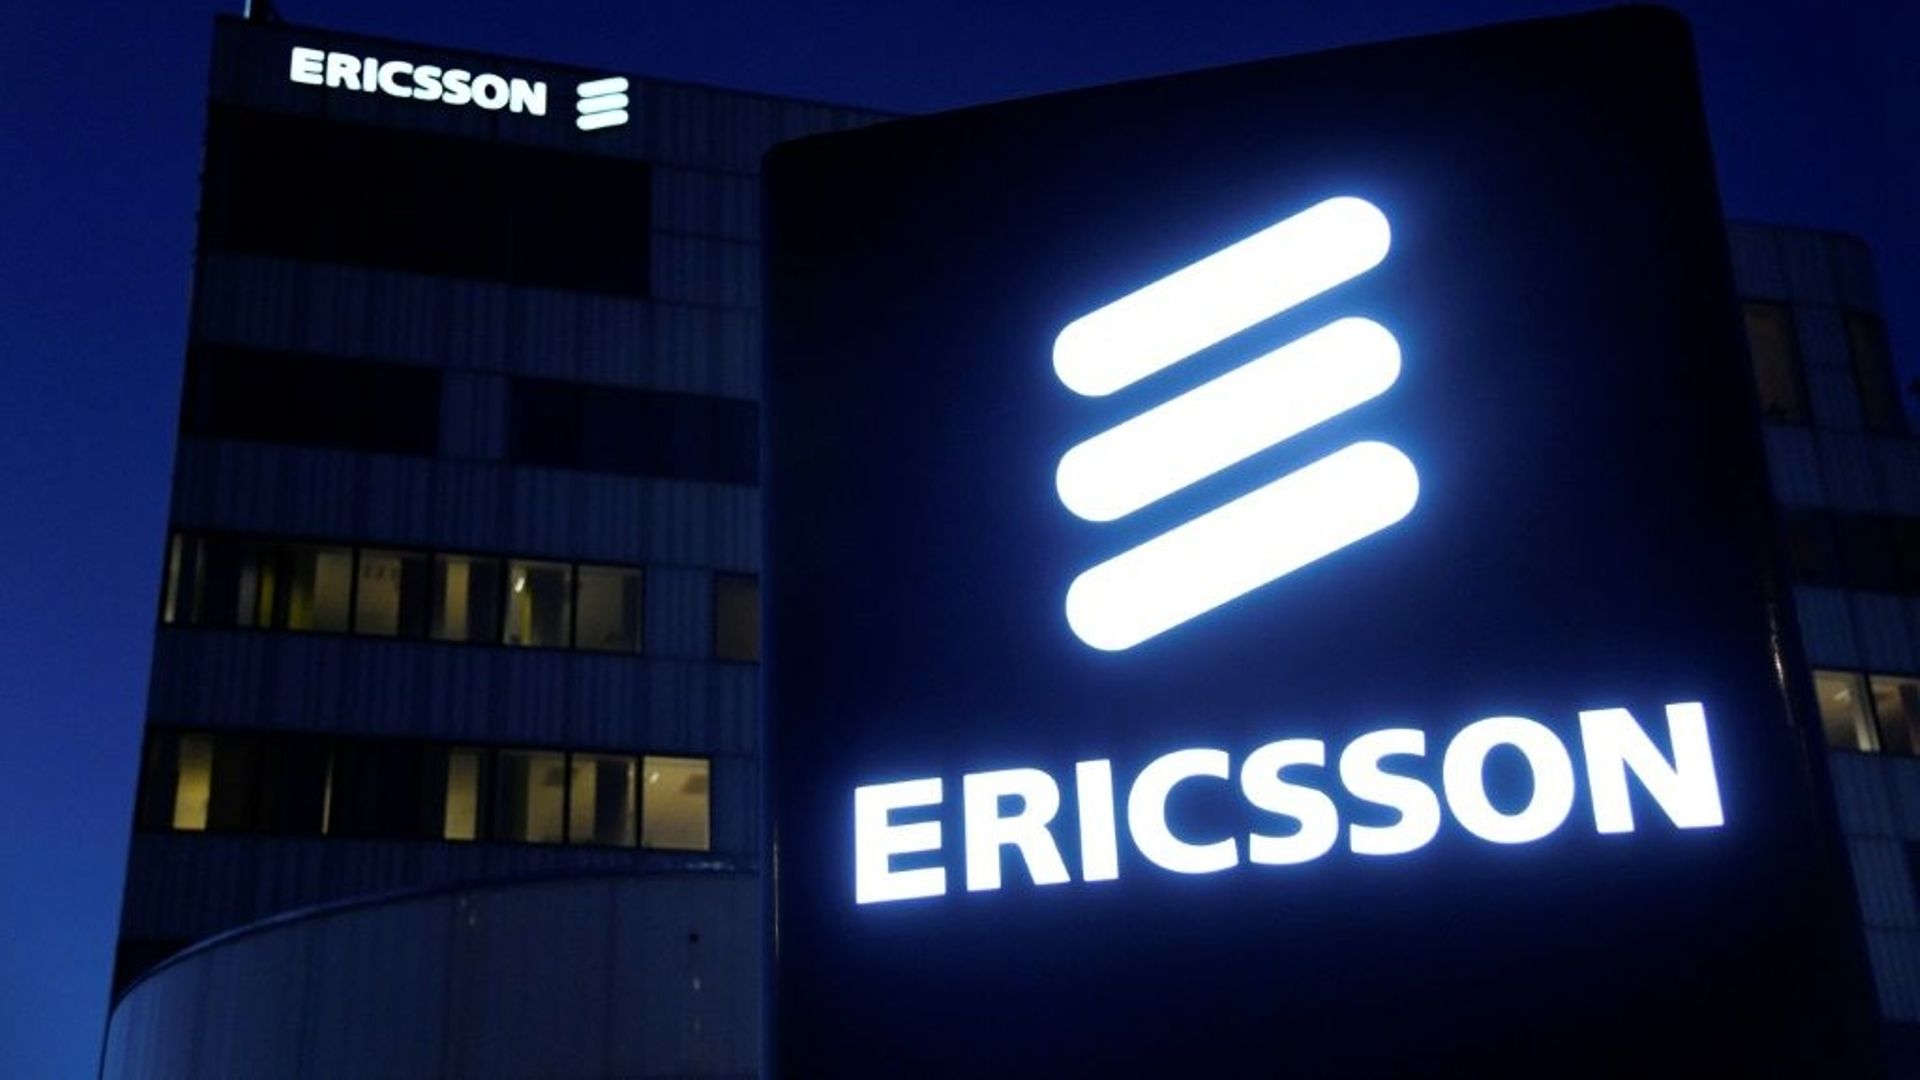 Le géant suédois de l'équipement télécom Ericsson a annoncé supprimer 8.500 emplois dans le monde, dans le cadre d'un plan de réduction des coûts alors que le groupe fait face à des difficultés financières